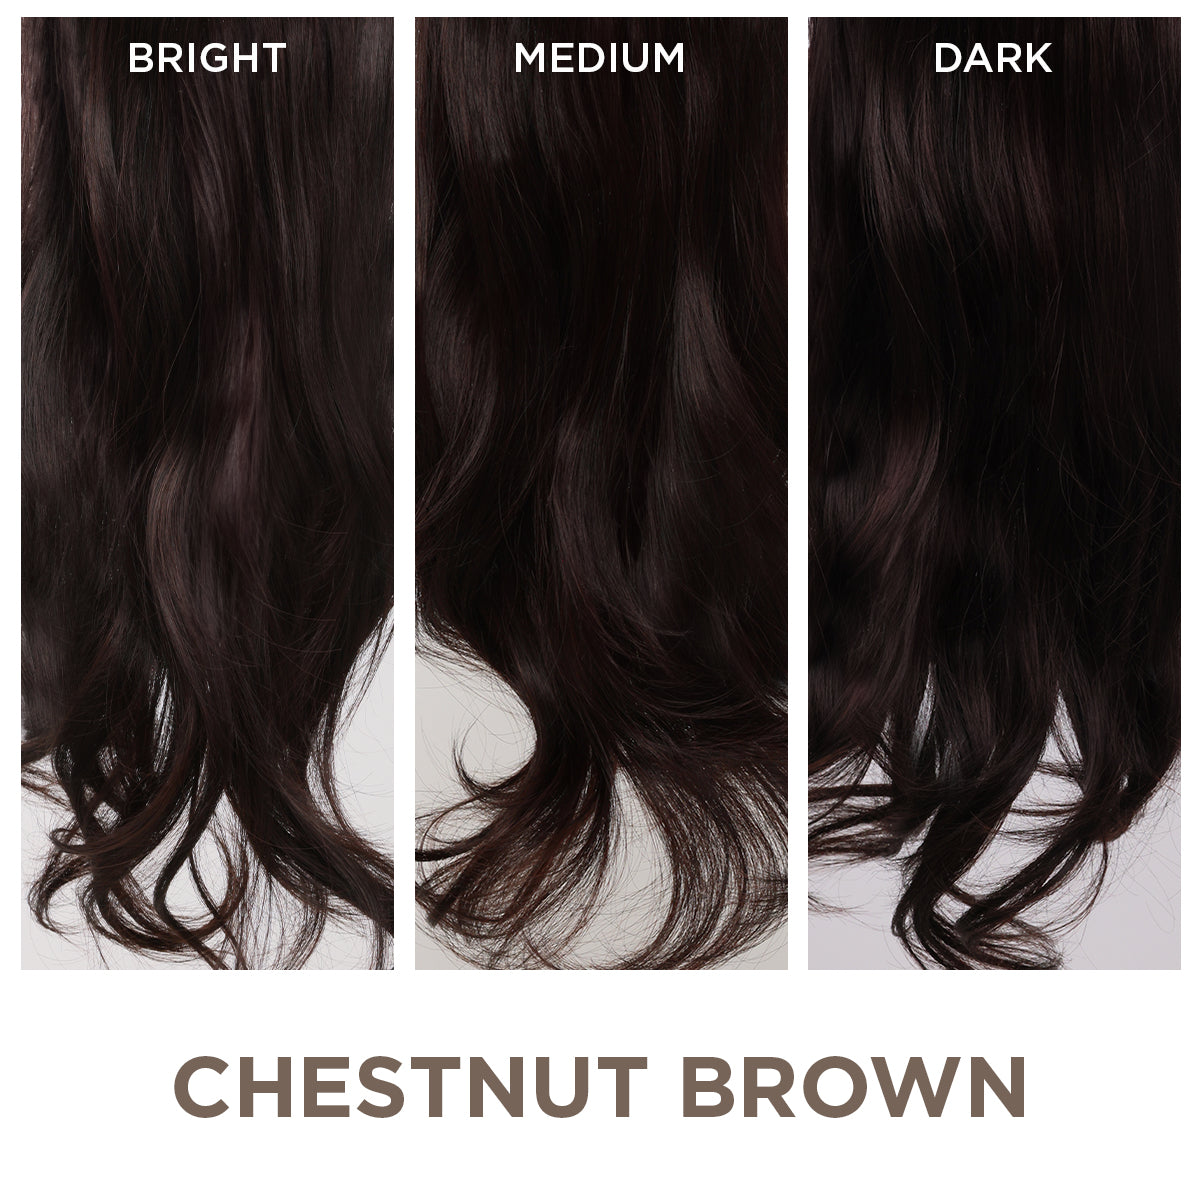 Chestnut Brown + 1 FREE HALO